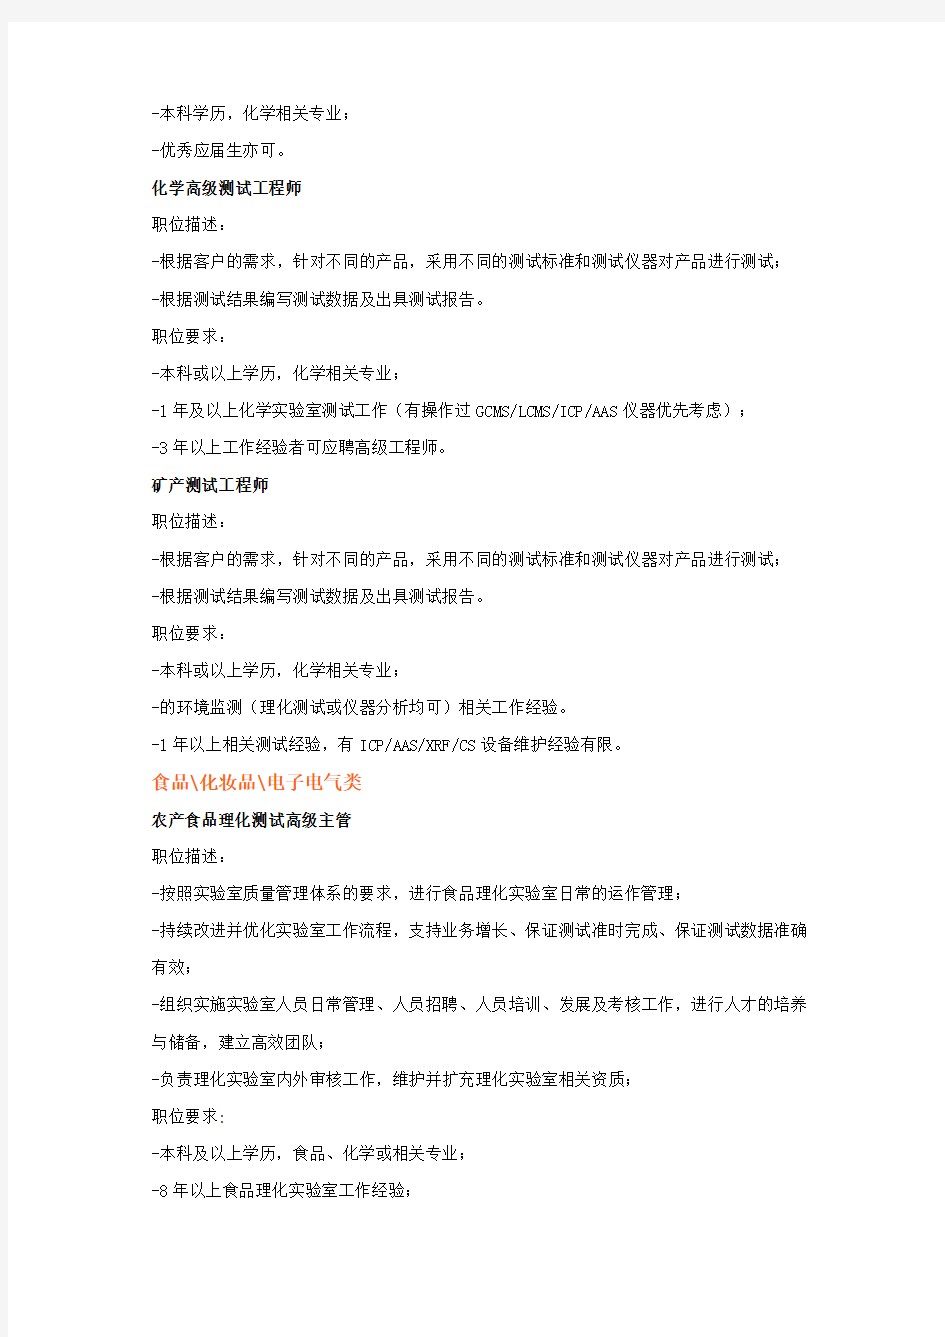 SGS广州专场招聘会职位列表详细